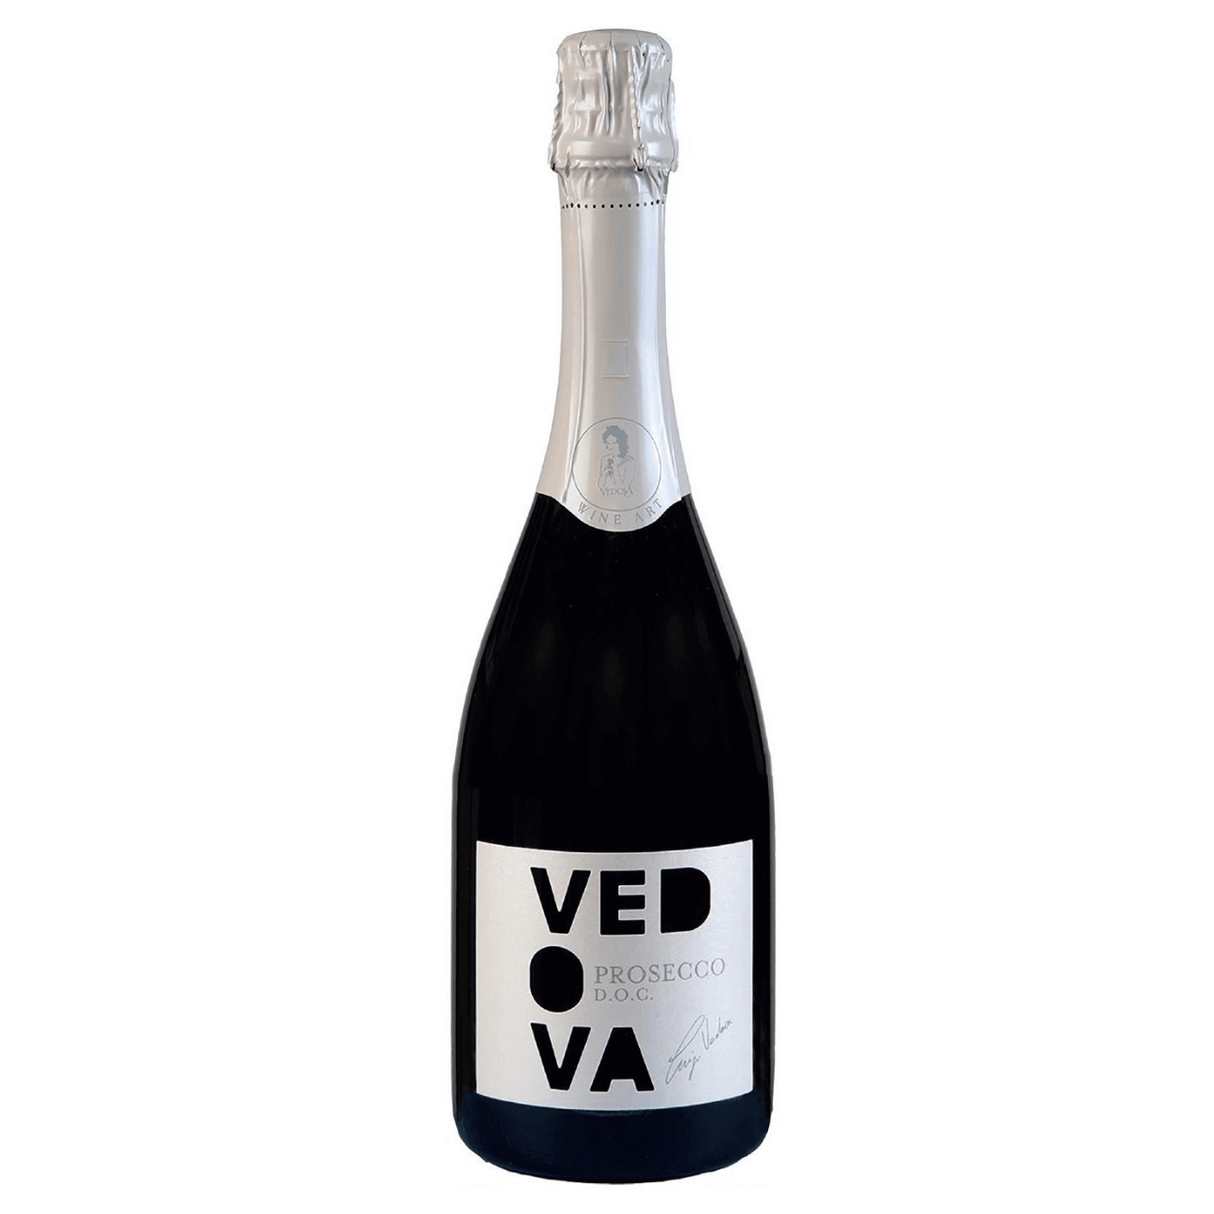 Vedova Prosecco DOC Veneto NV (12 bottles)